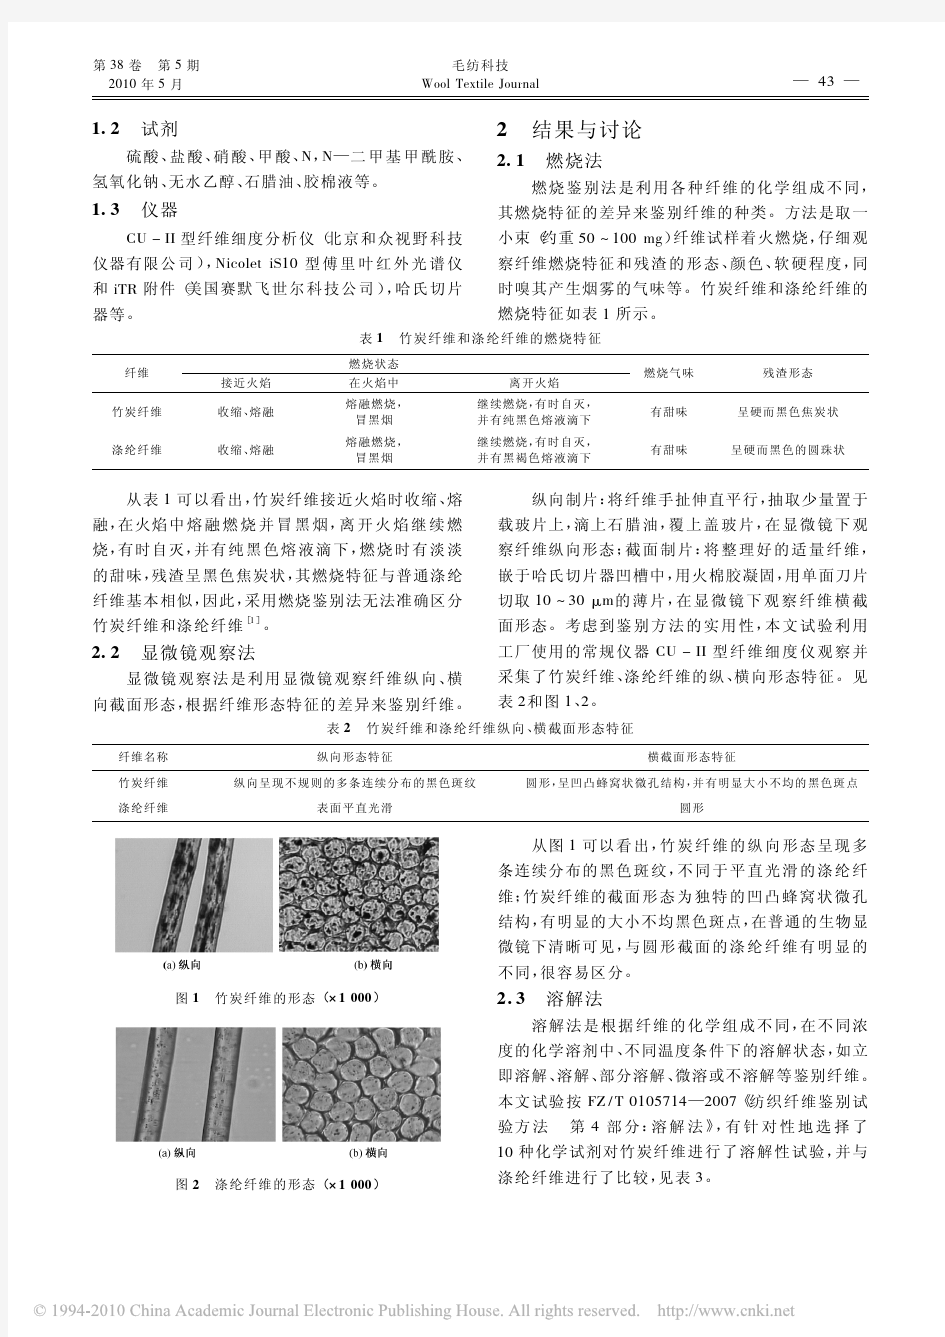 竹炭改性涤纶纤维的定性鉴别